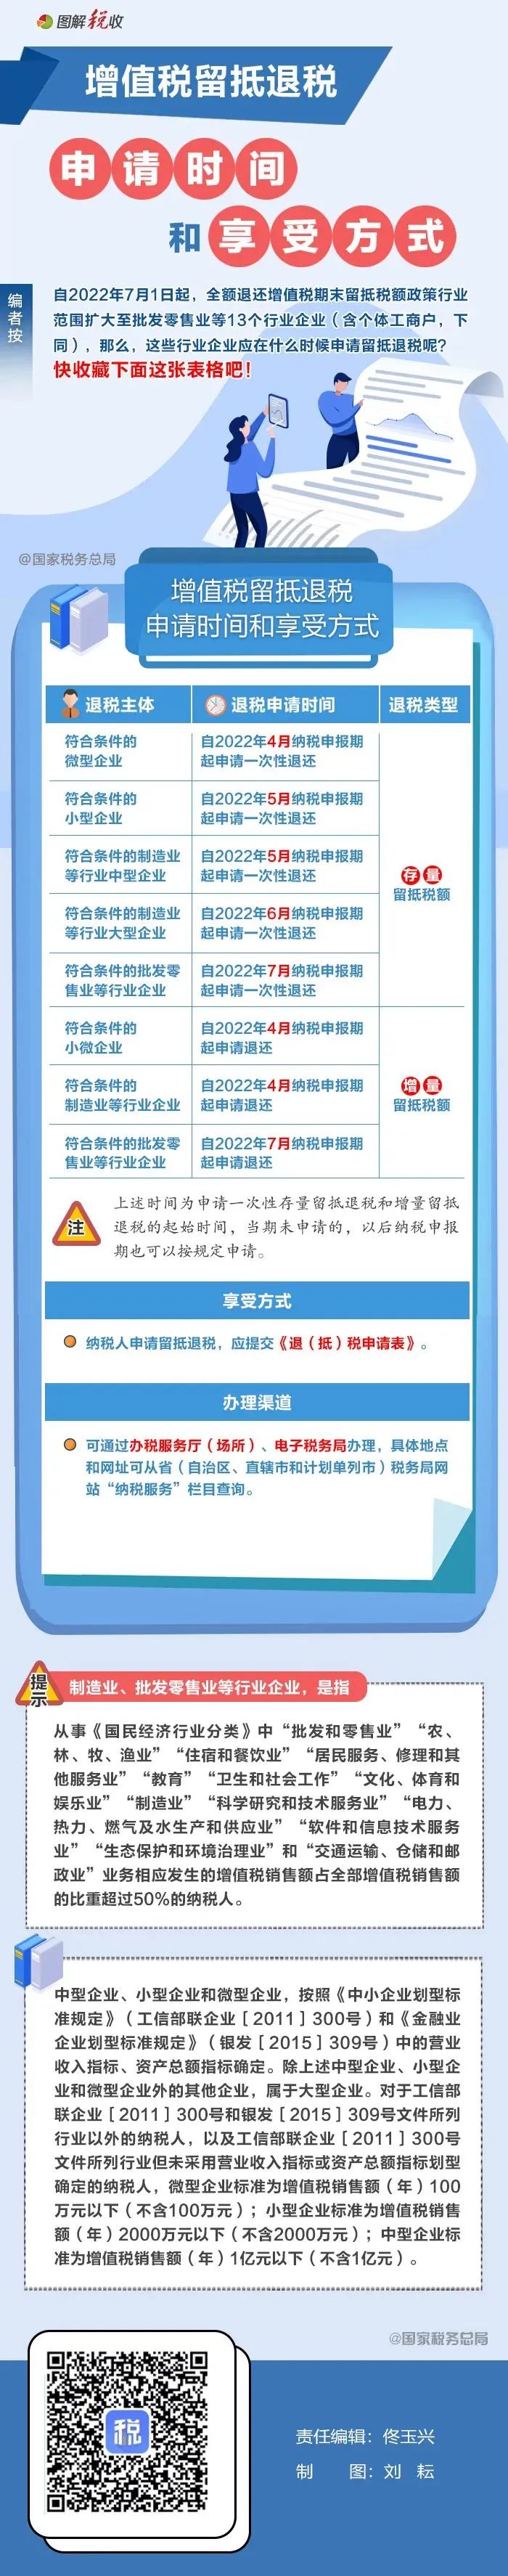 7项措施助力稳就业行动、进出京新政、上海医保新动作、长沙提高养老金......